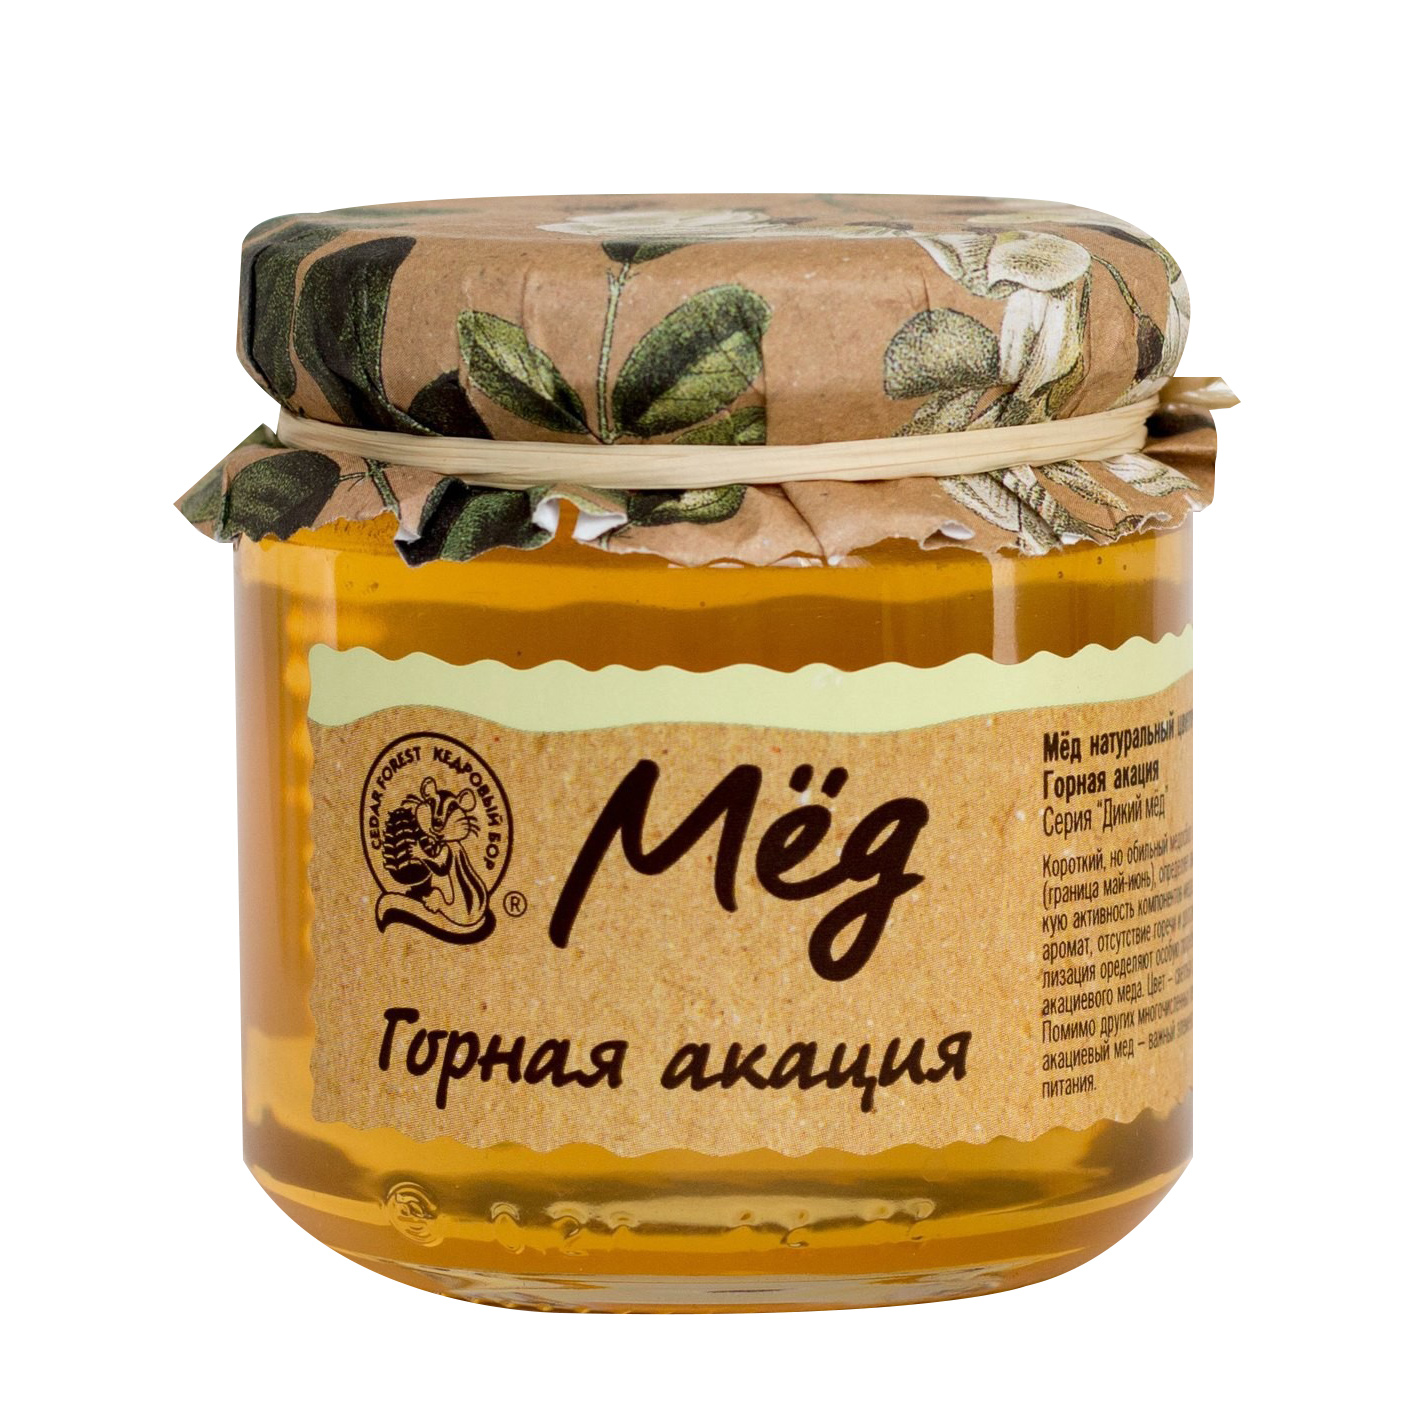 мёд натуральный цветочный кедровый бор гречишный 245 г Мёд Кедровый бор Горная акация 245 г